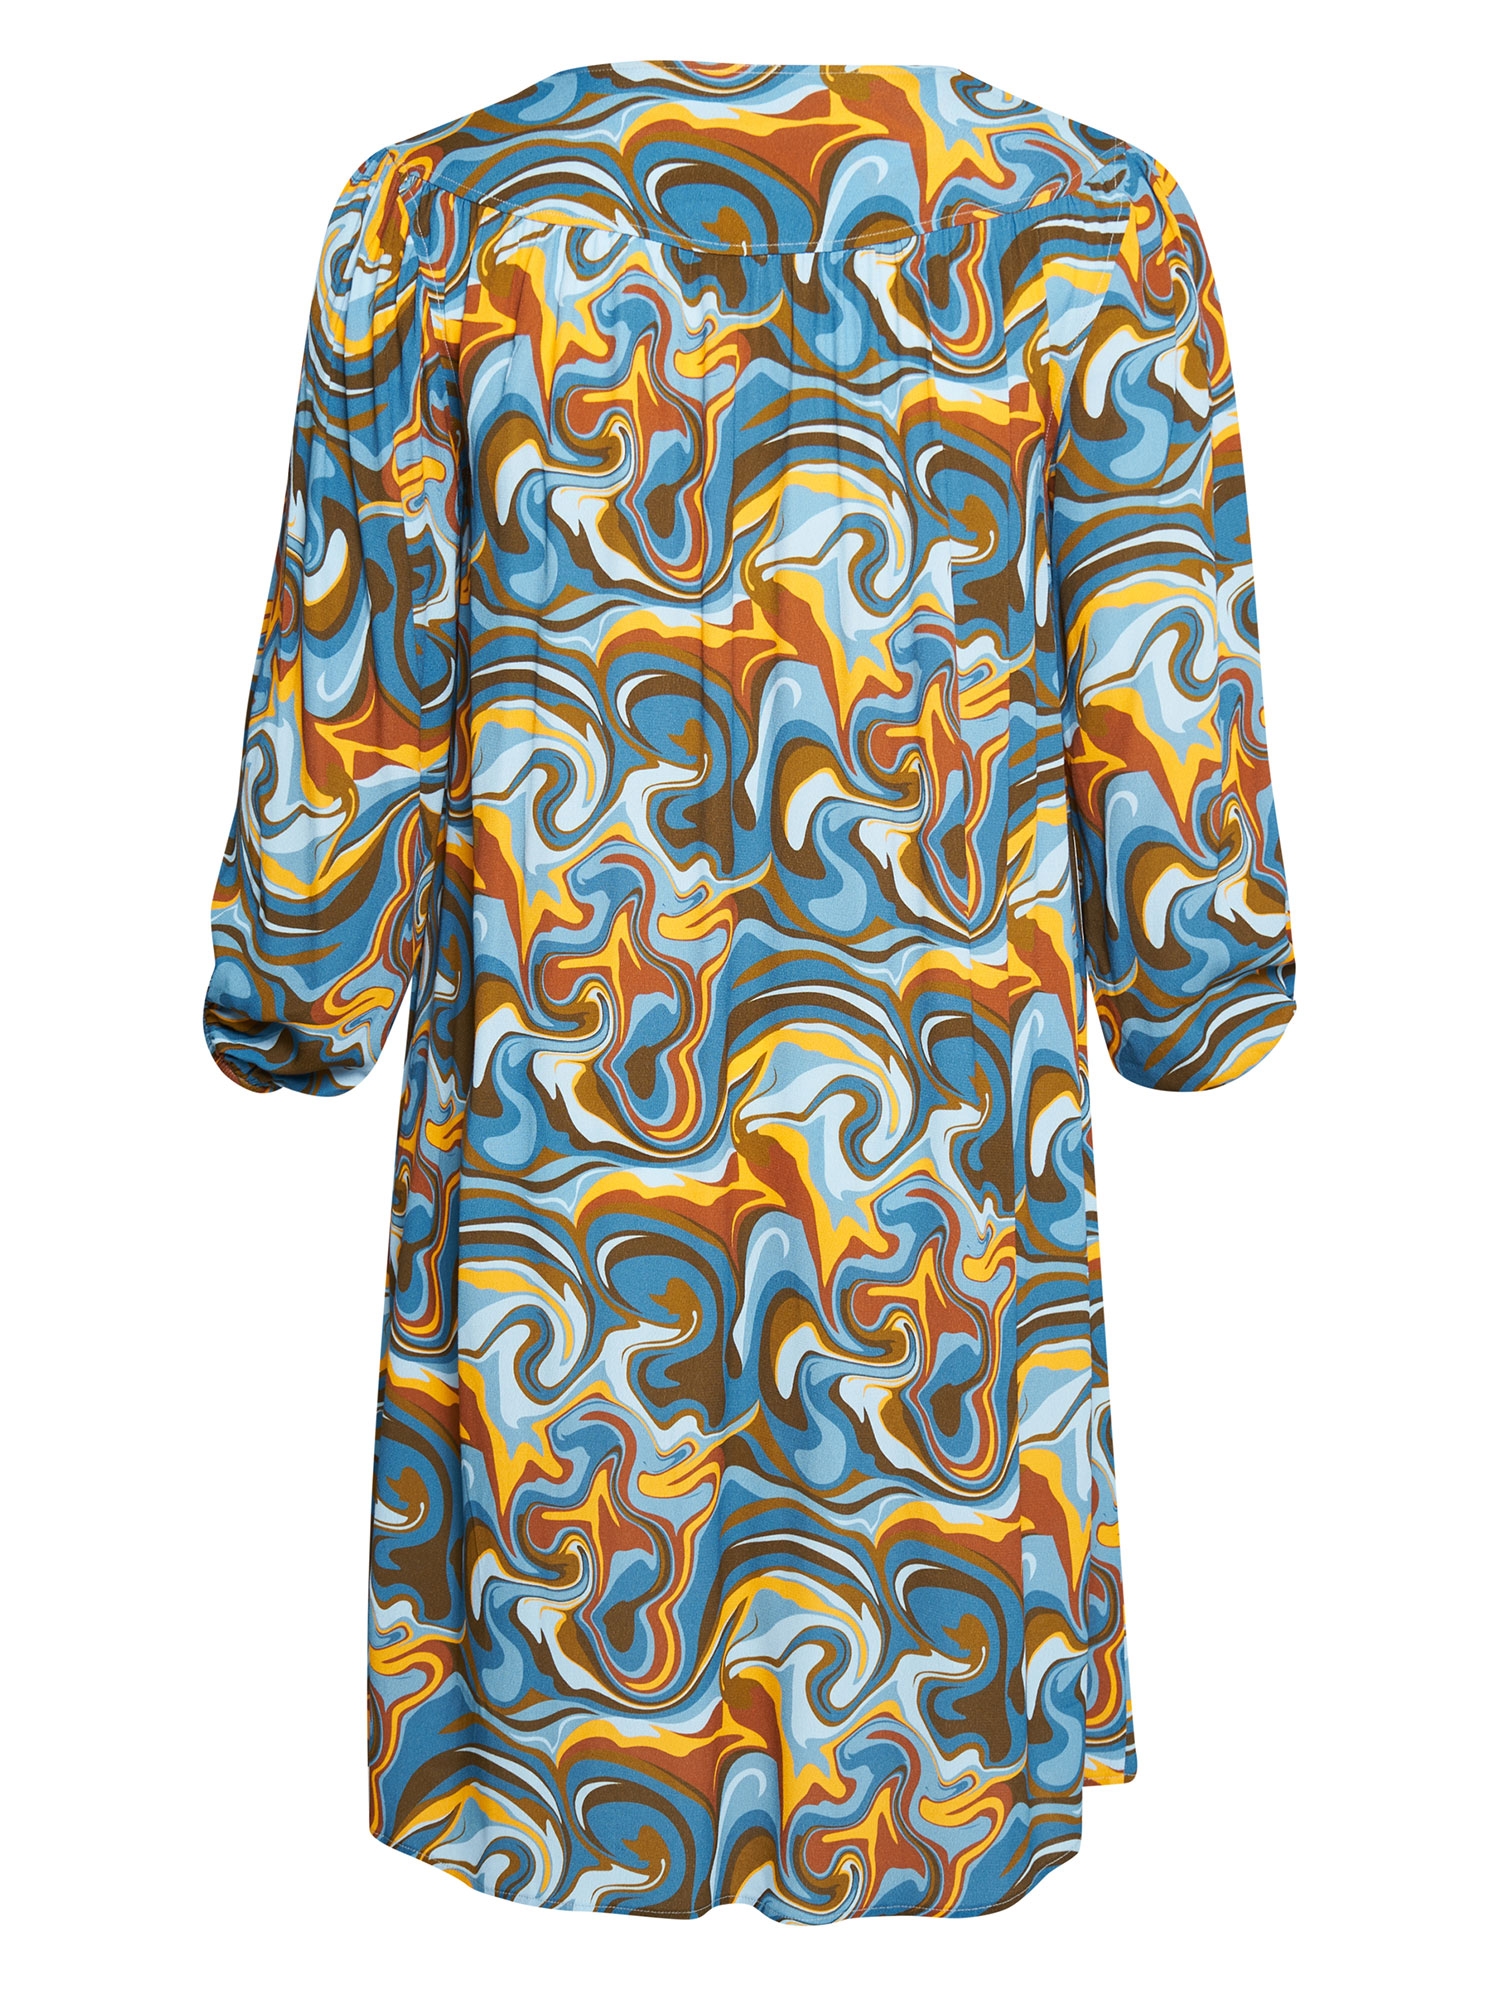 MARTA - skjortekjole med retro print i blå og gyldne toner  fra Adia